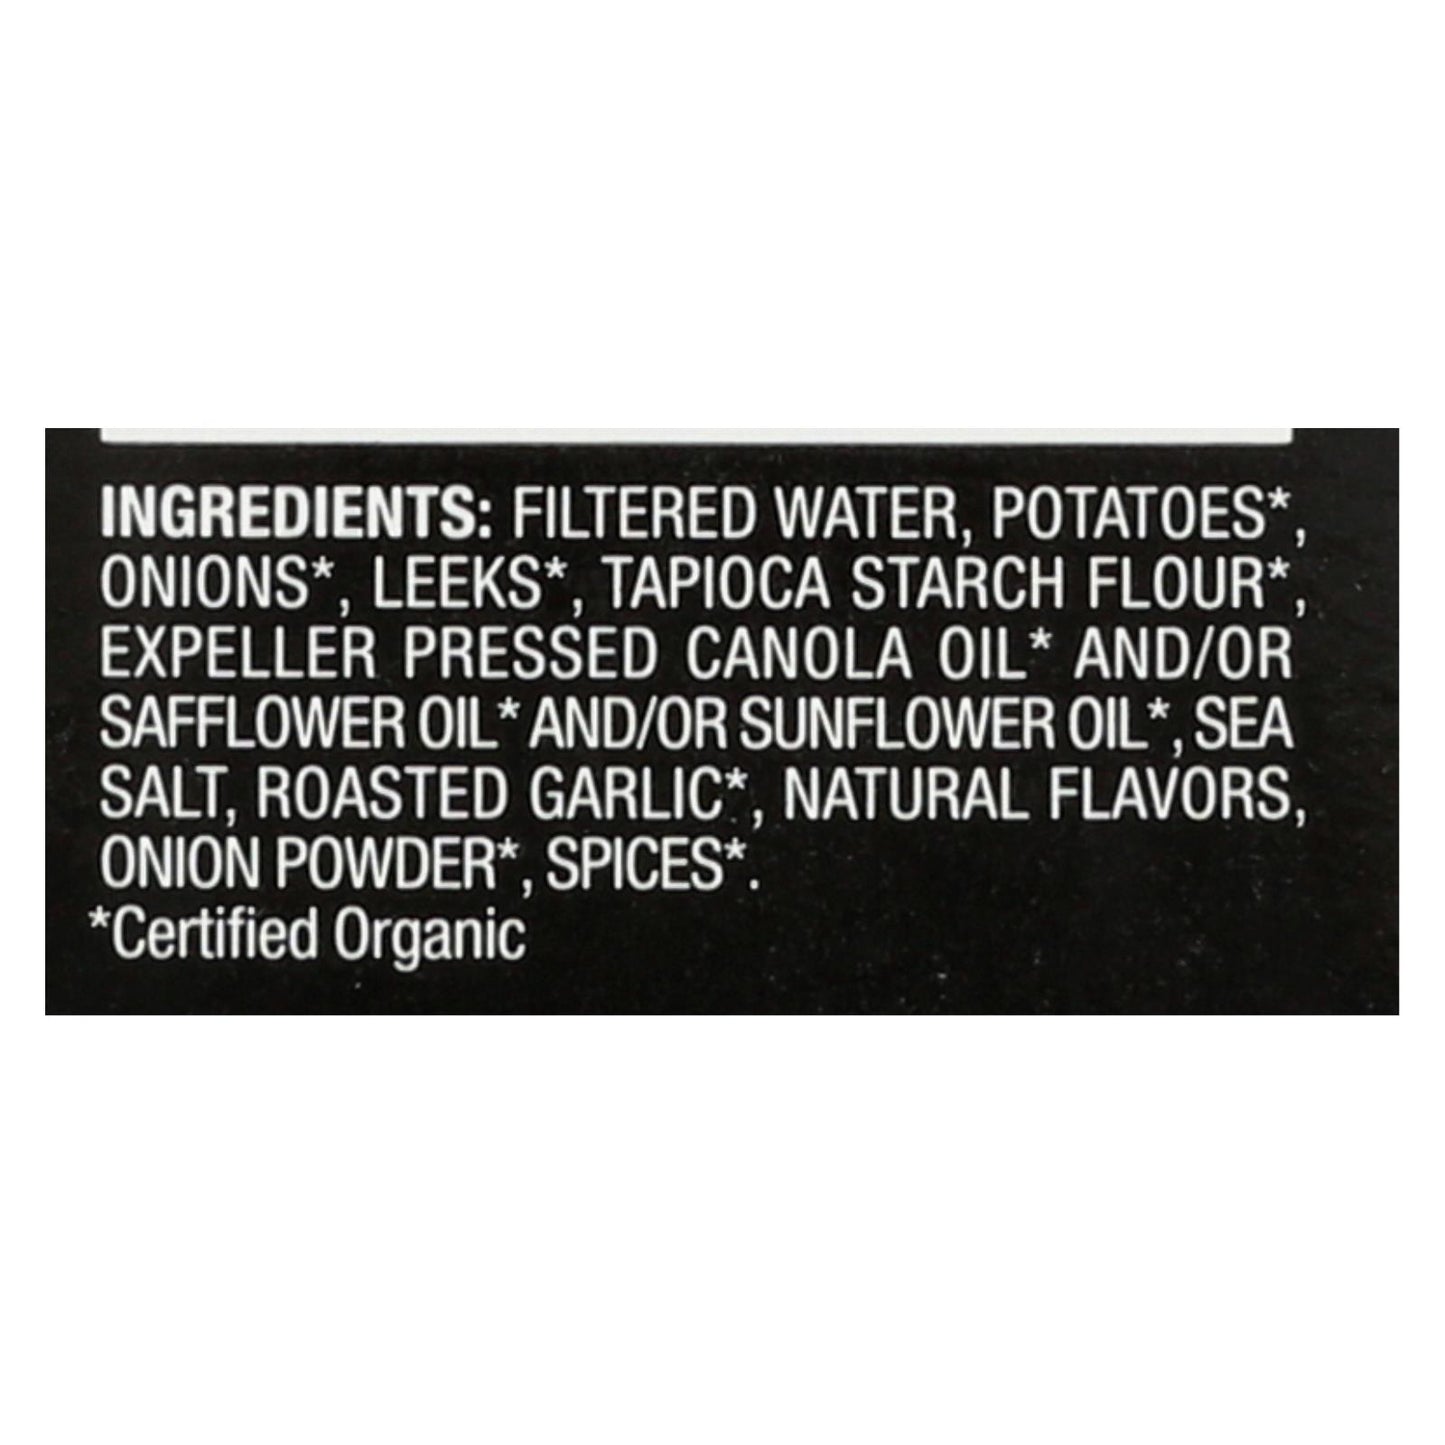 Imagine Foods - Soup Creamy Potato Leek - Case Of 6-32 Fz